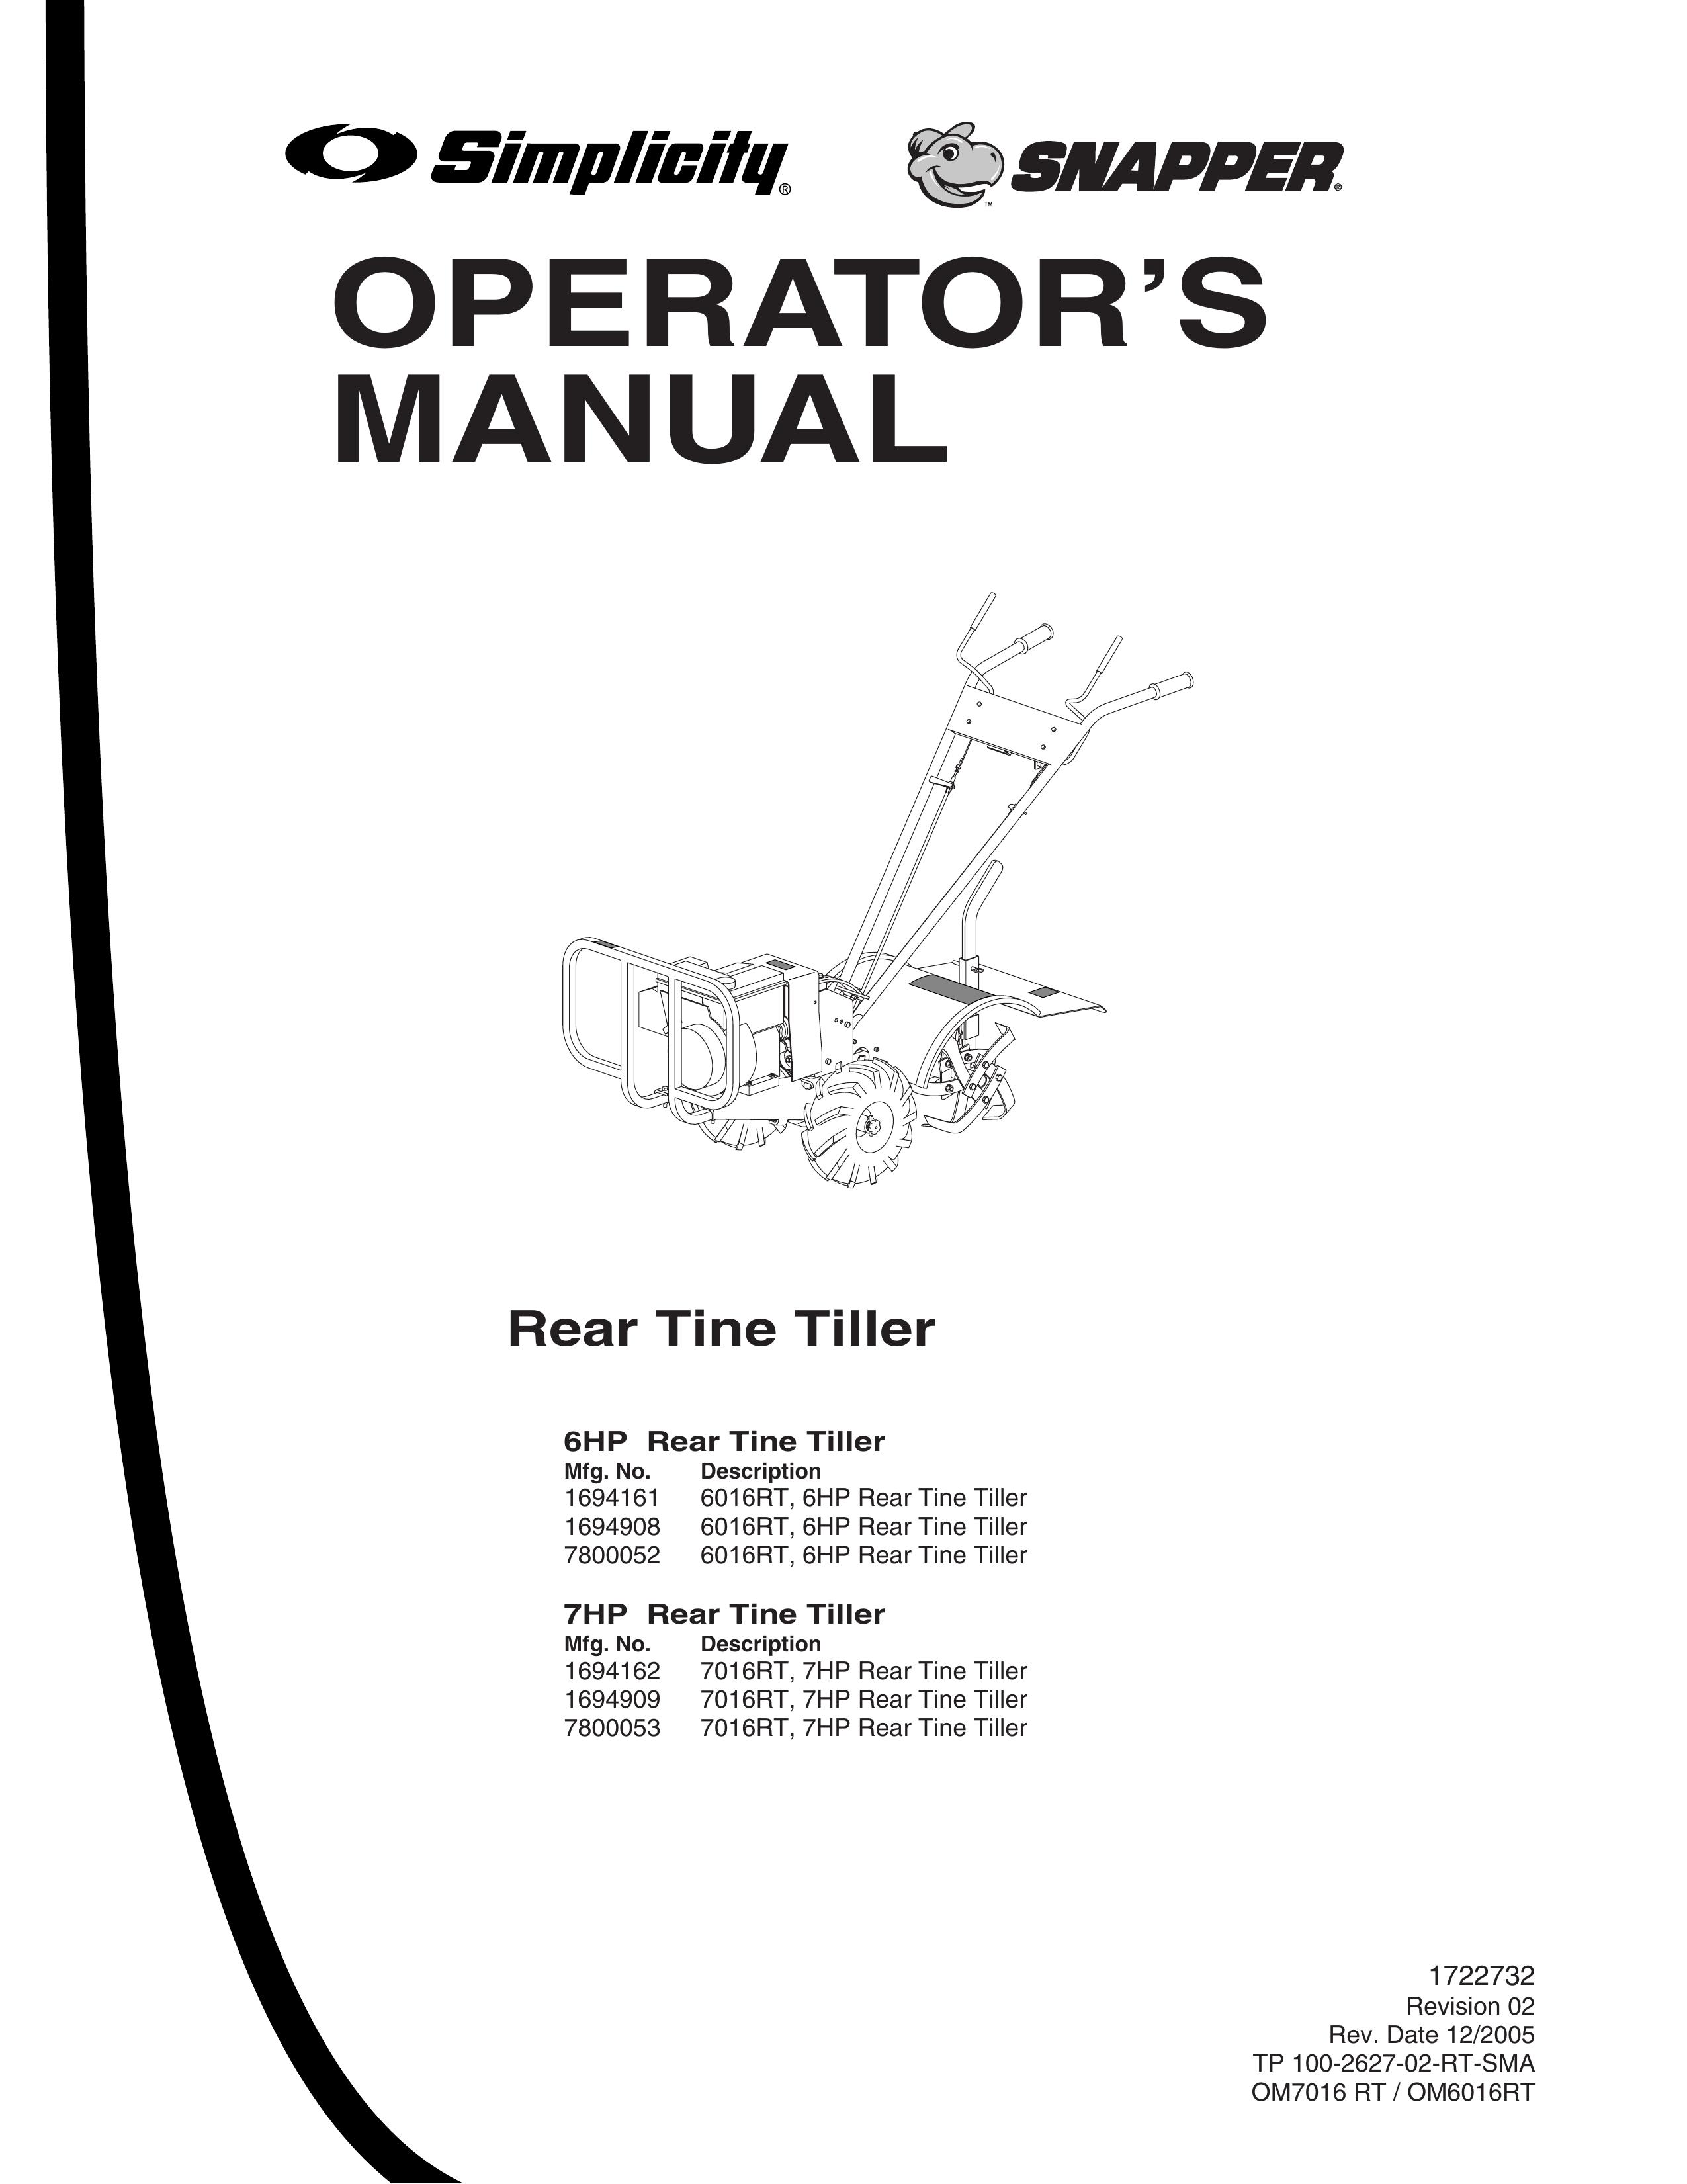 Snapper 6HP, 7HP Tiller User Manual